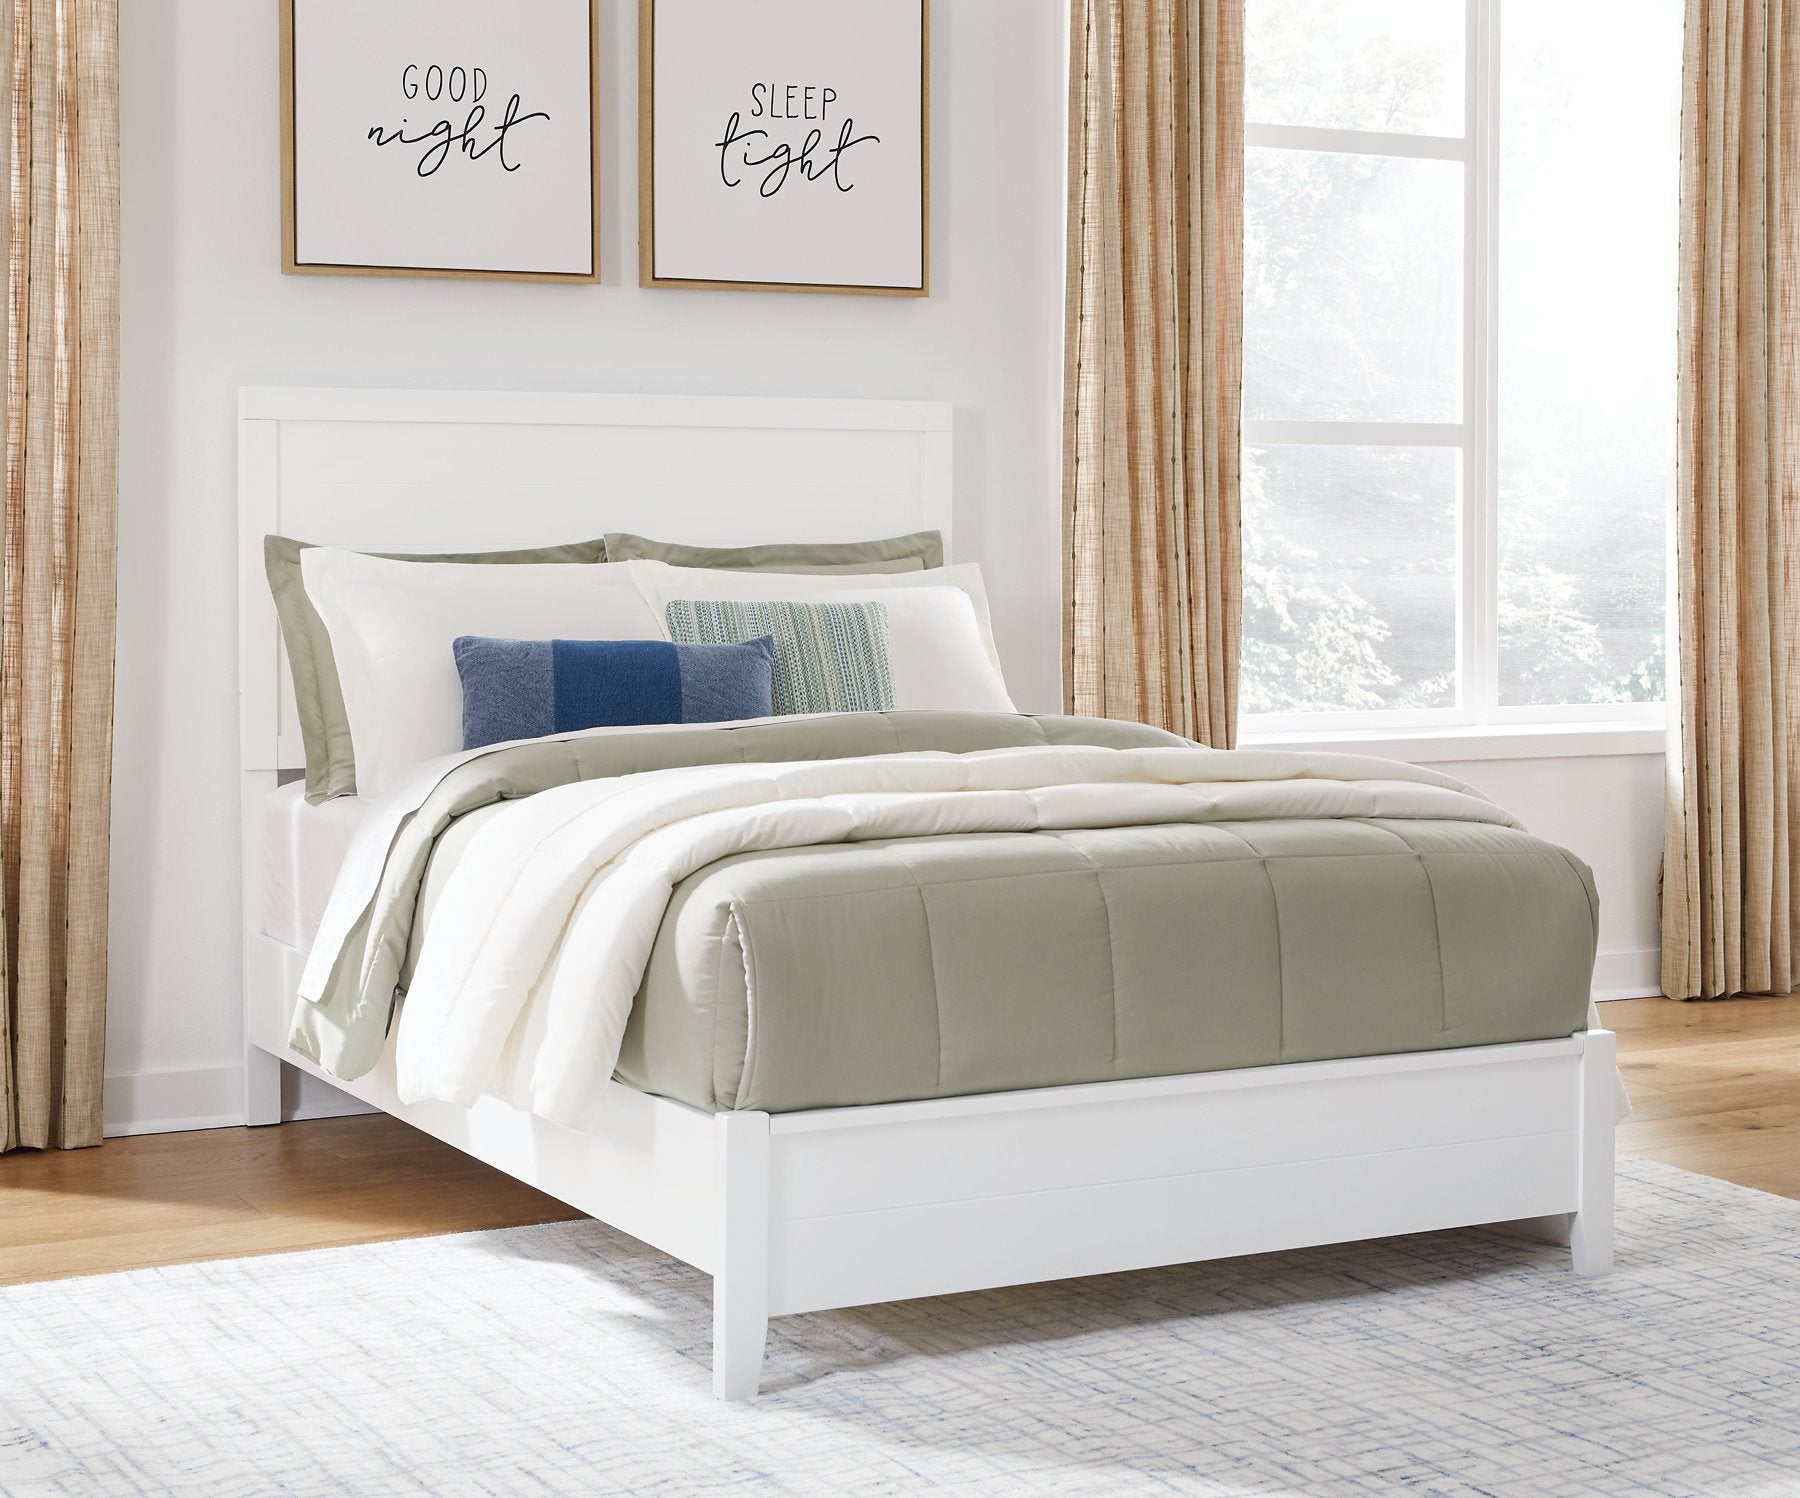 Binterglen Bed - Half Price Furniture